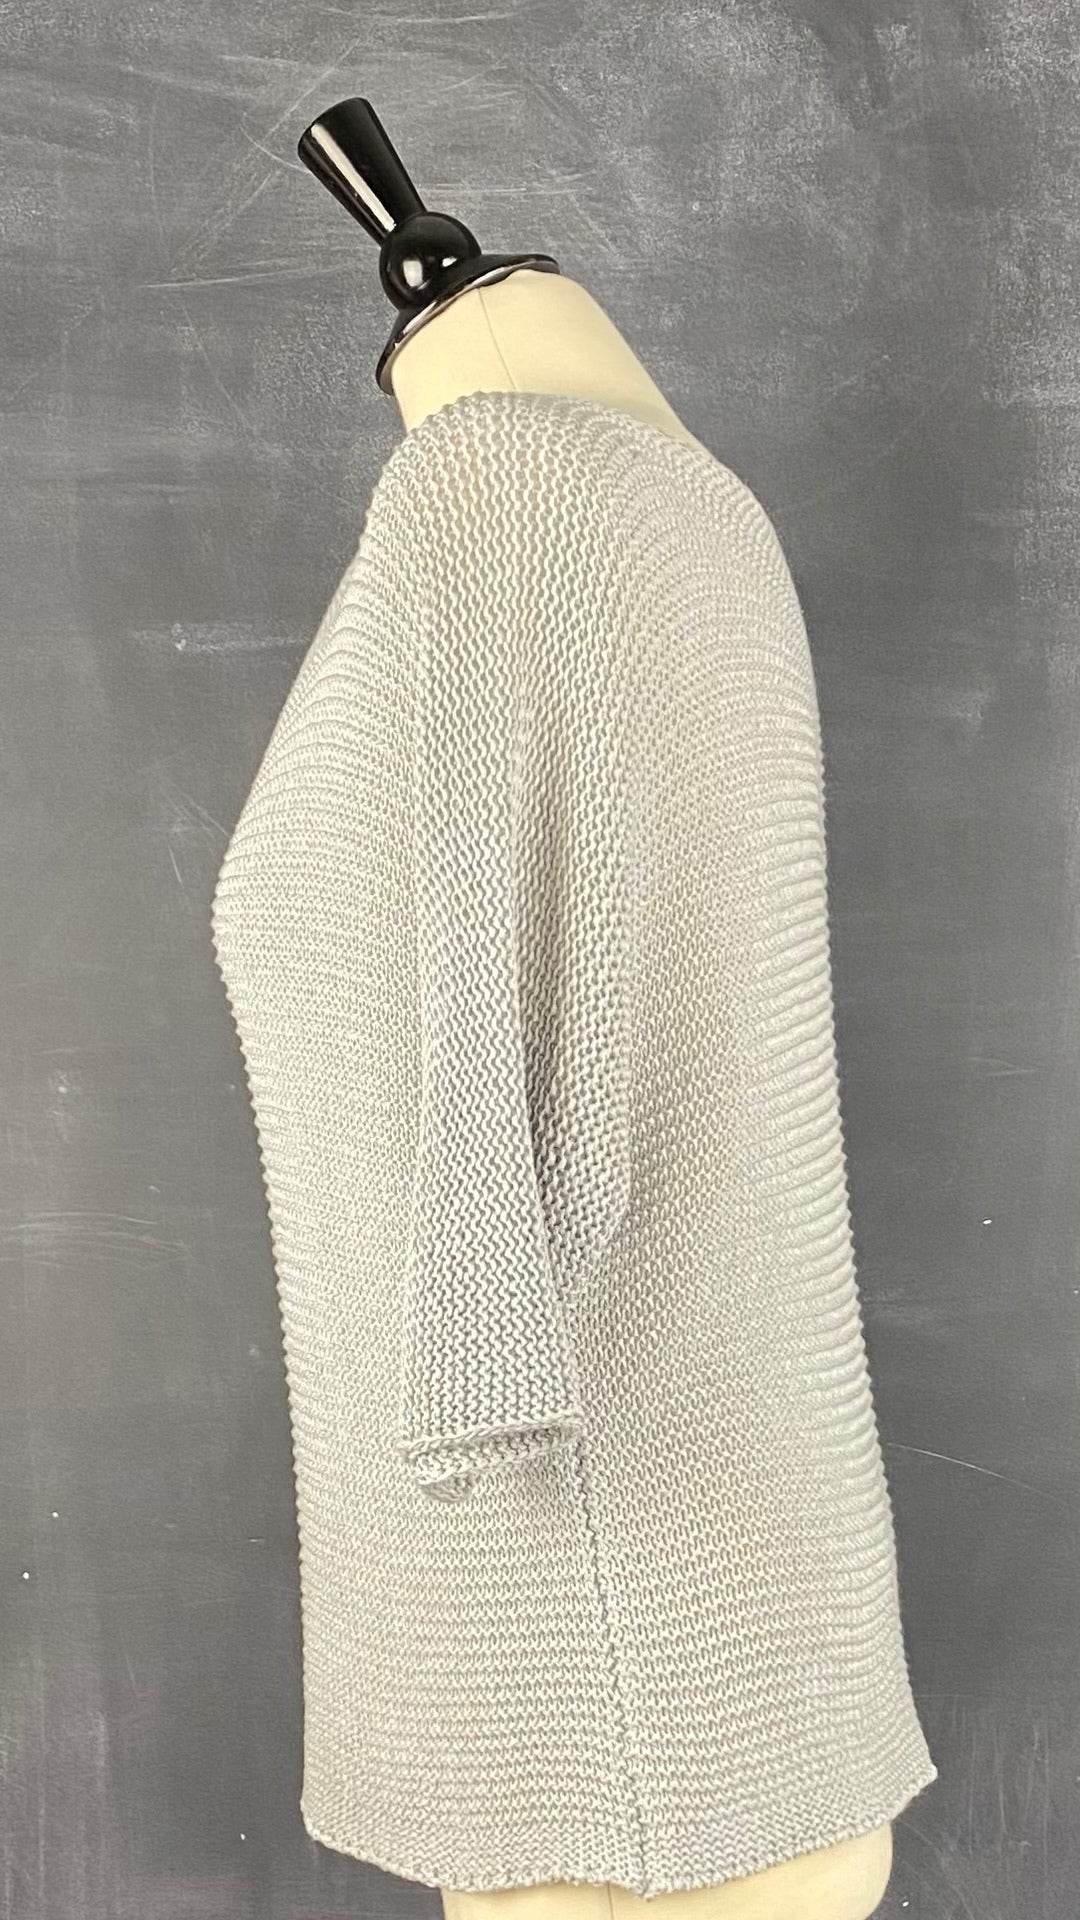 Chandail en tricot ajouré gris M Made in Italy, taille medium. Vue de côté.